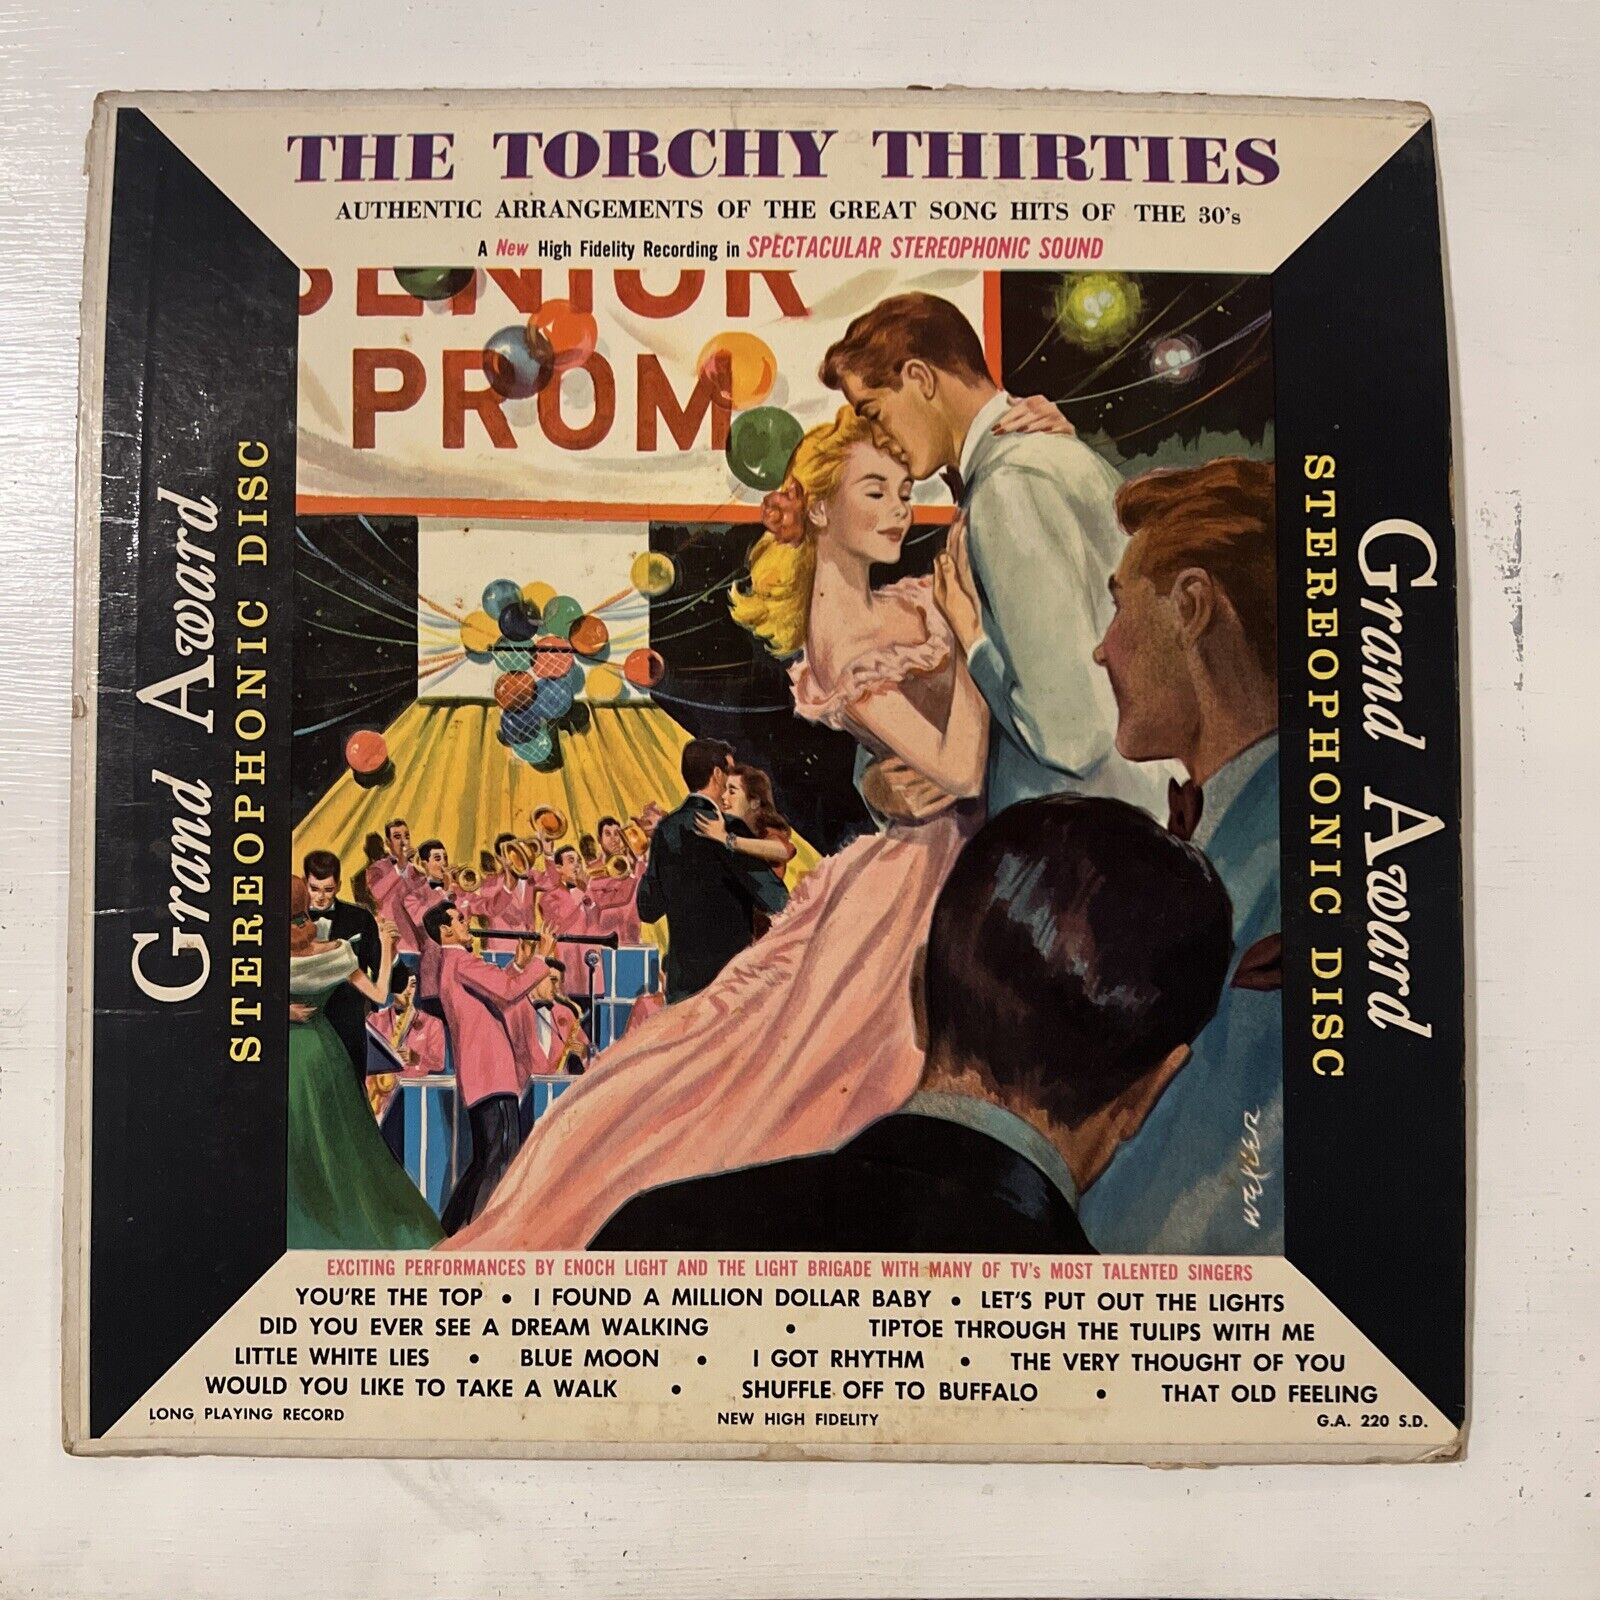 The Torchy Thirties by Enoch Light (Vinyl LP Grand Award GA-220-SD) VG/VG